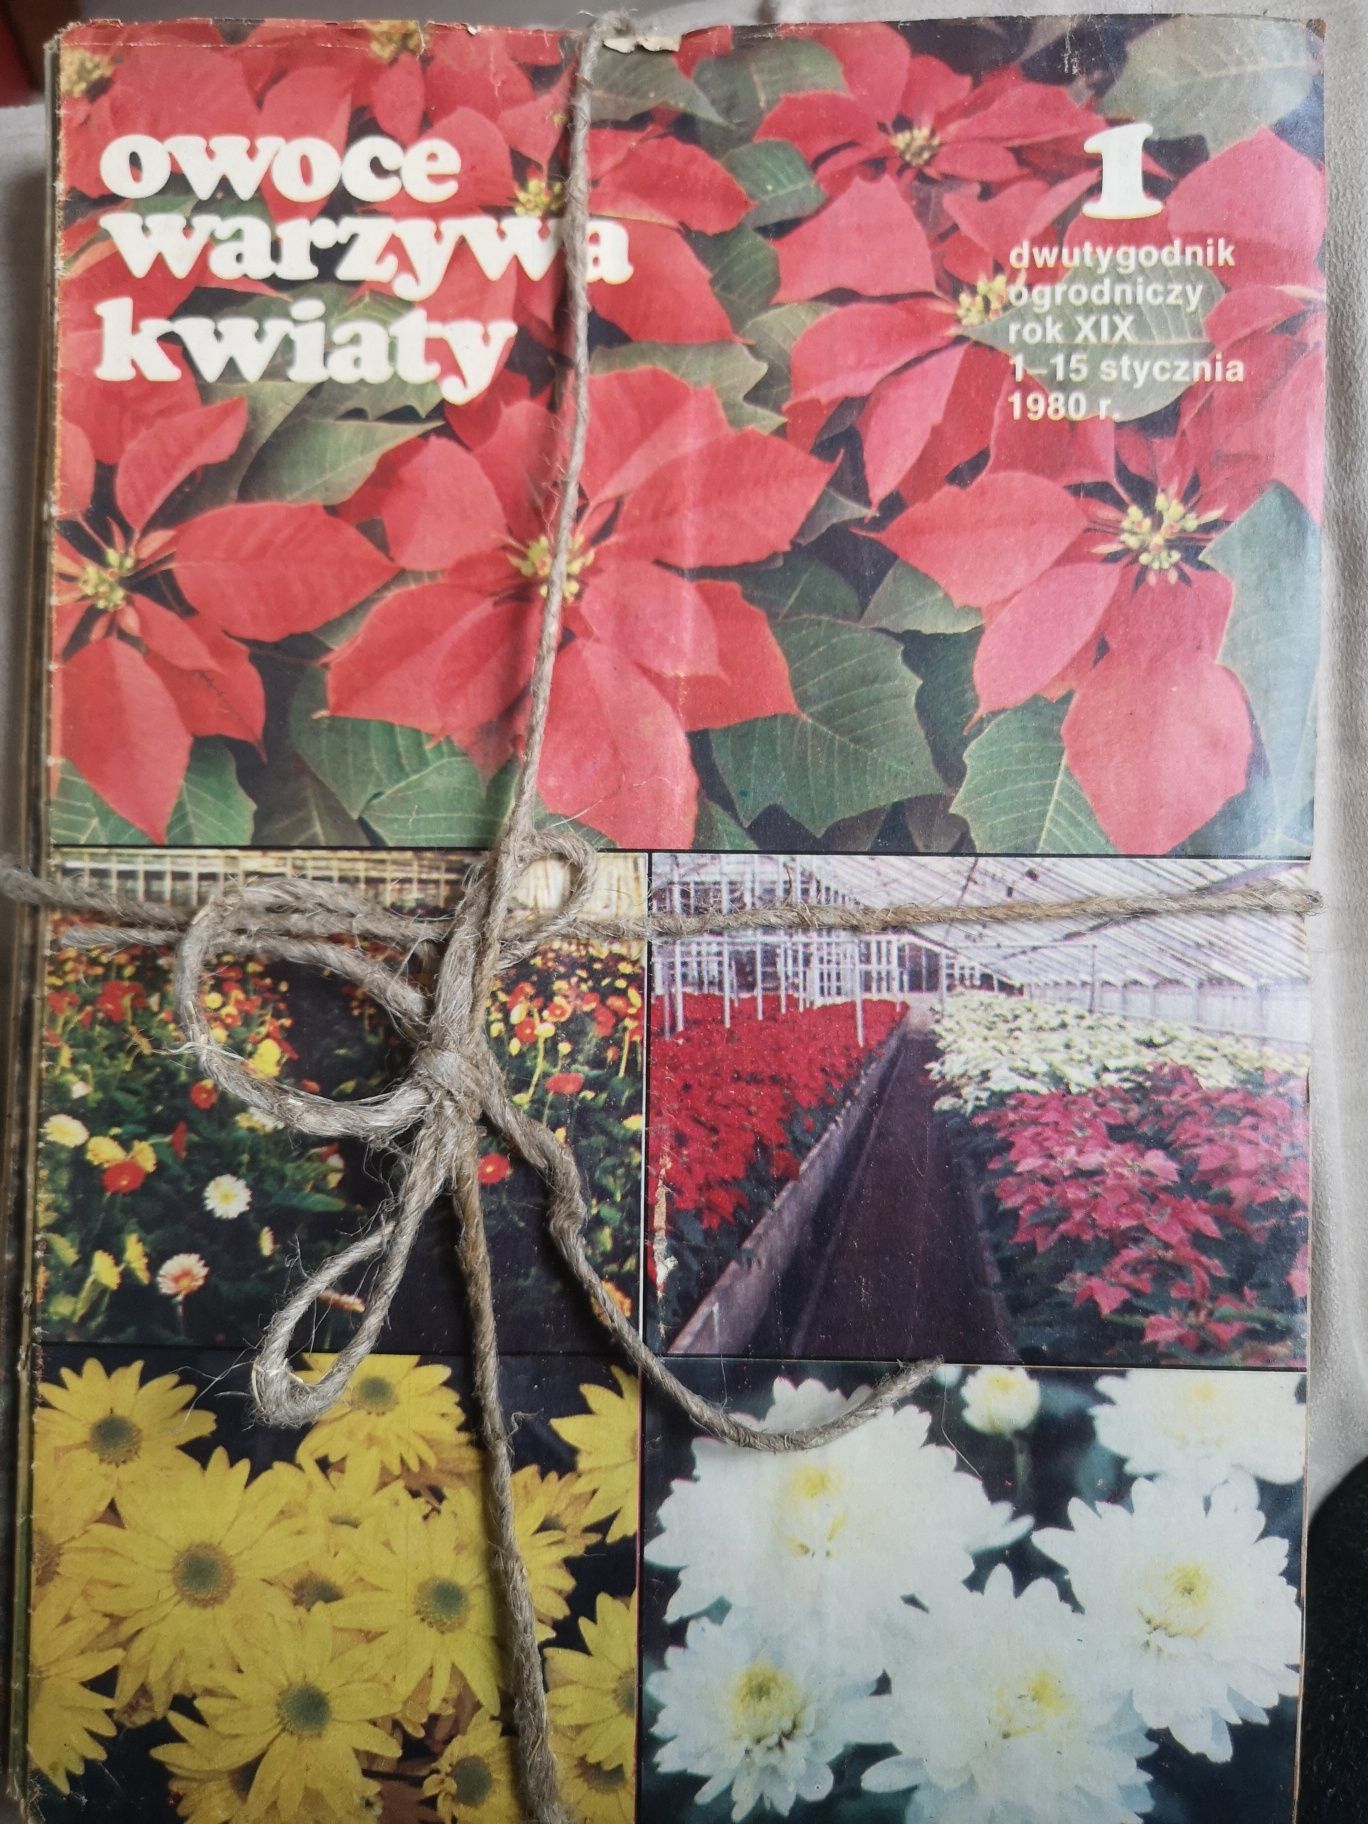 Owoce Warzywa Kwiaty dwutygodnik z lat 1979 - 1984